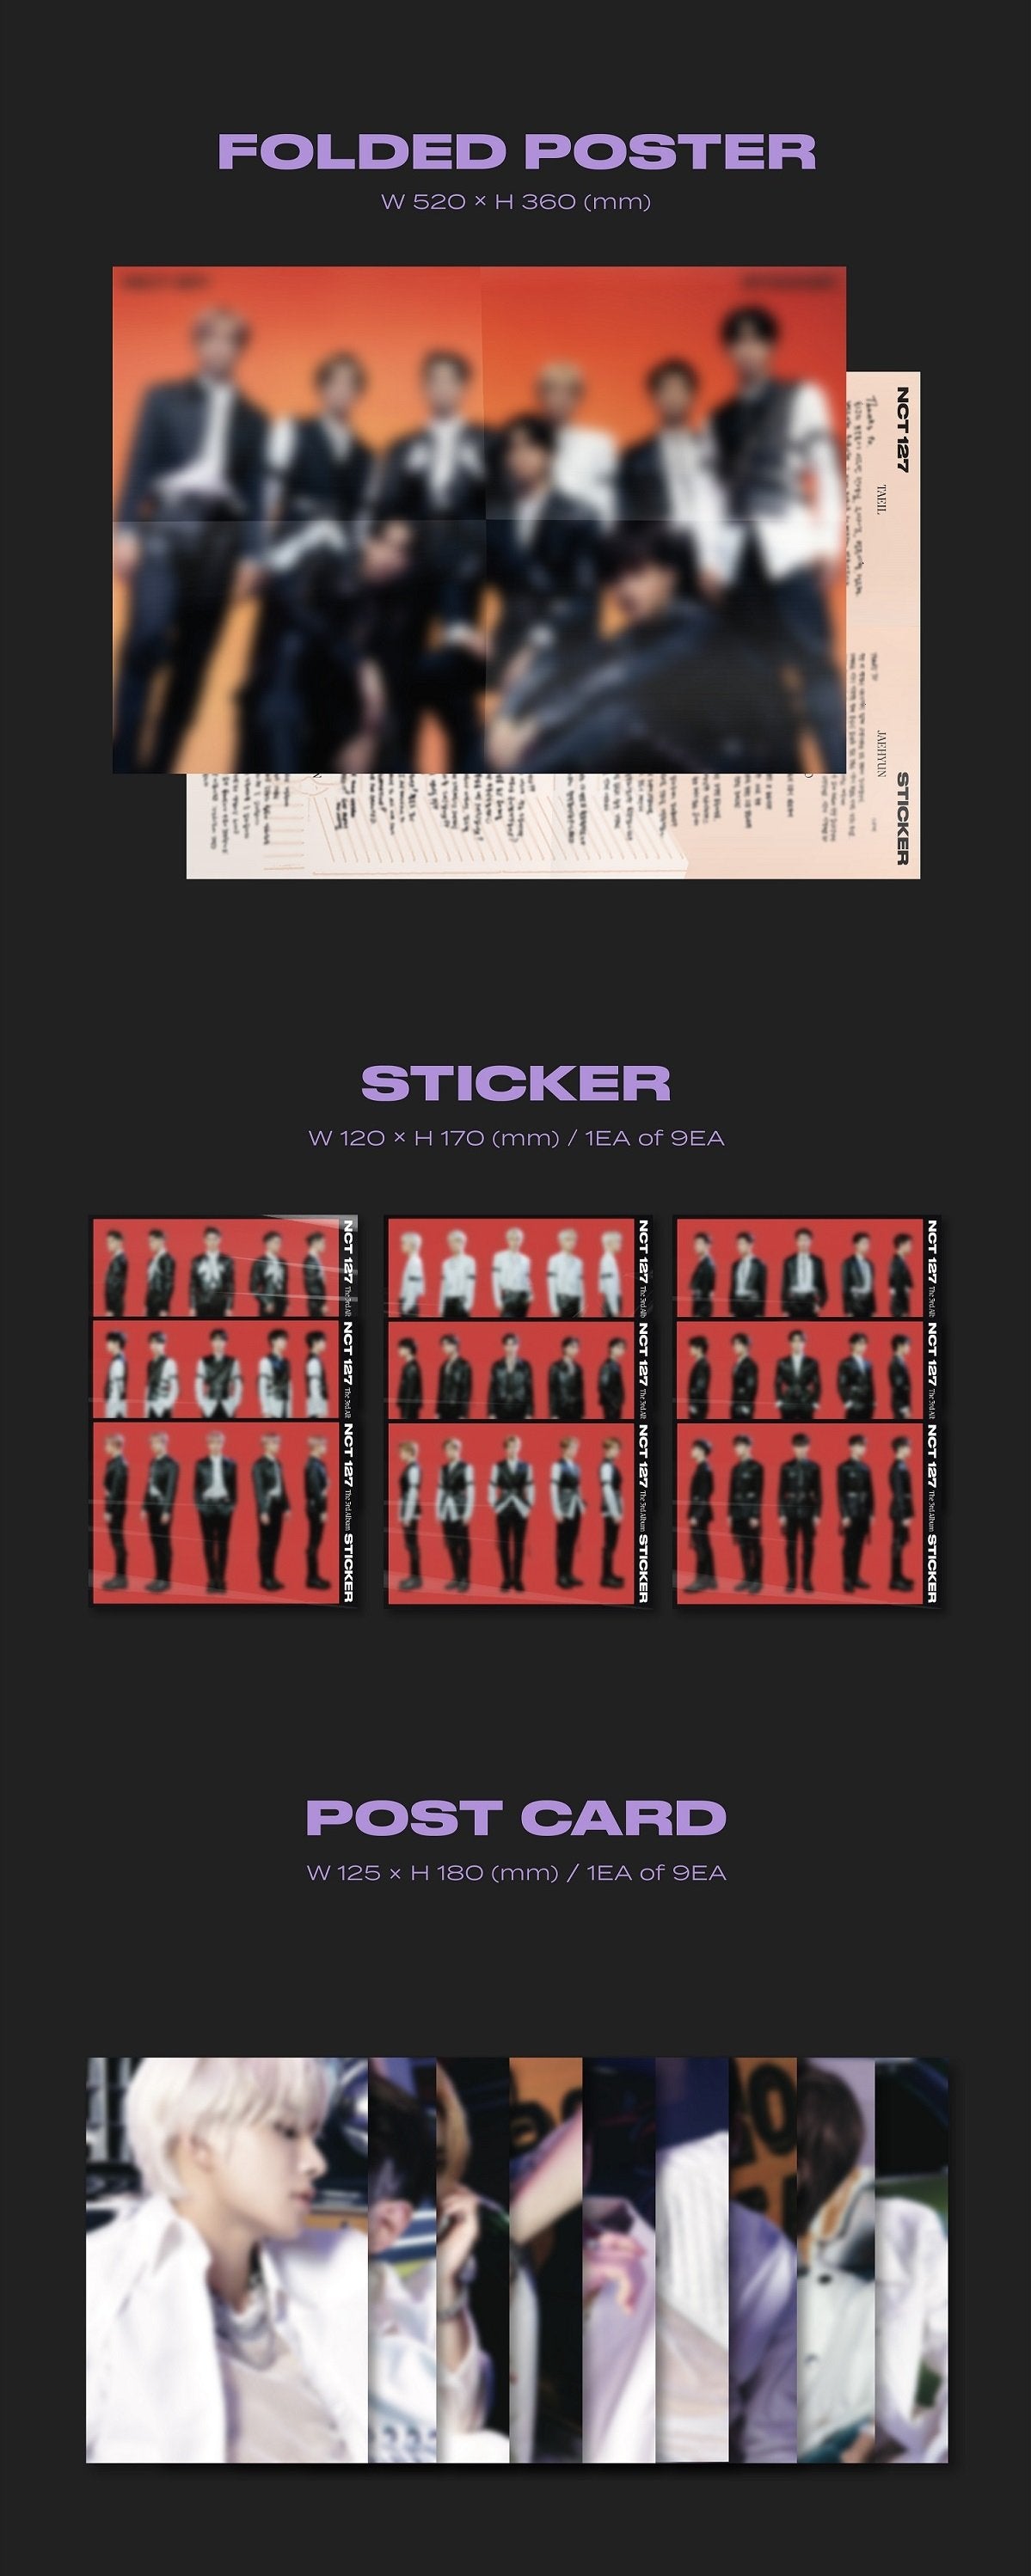 NCT 127 Vol. 3 - STICKER (Photobook/STICKER Version)